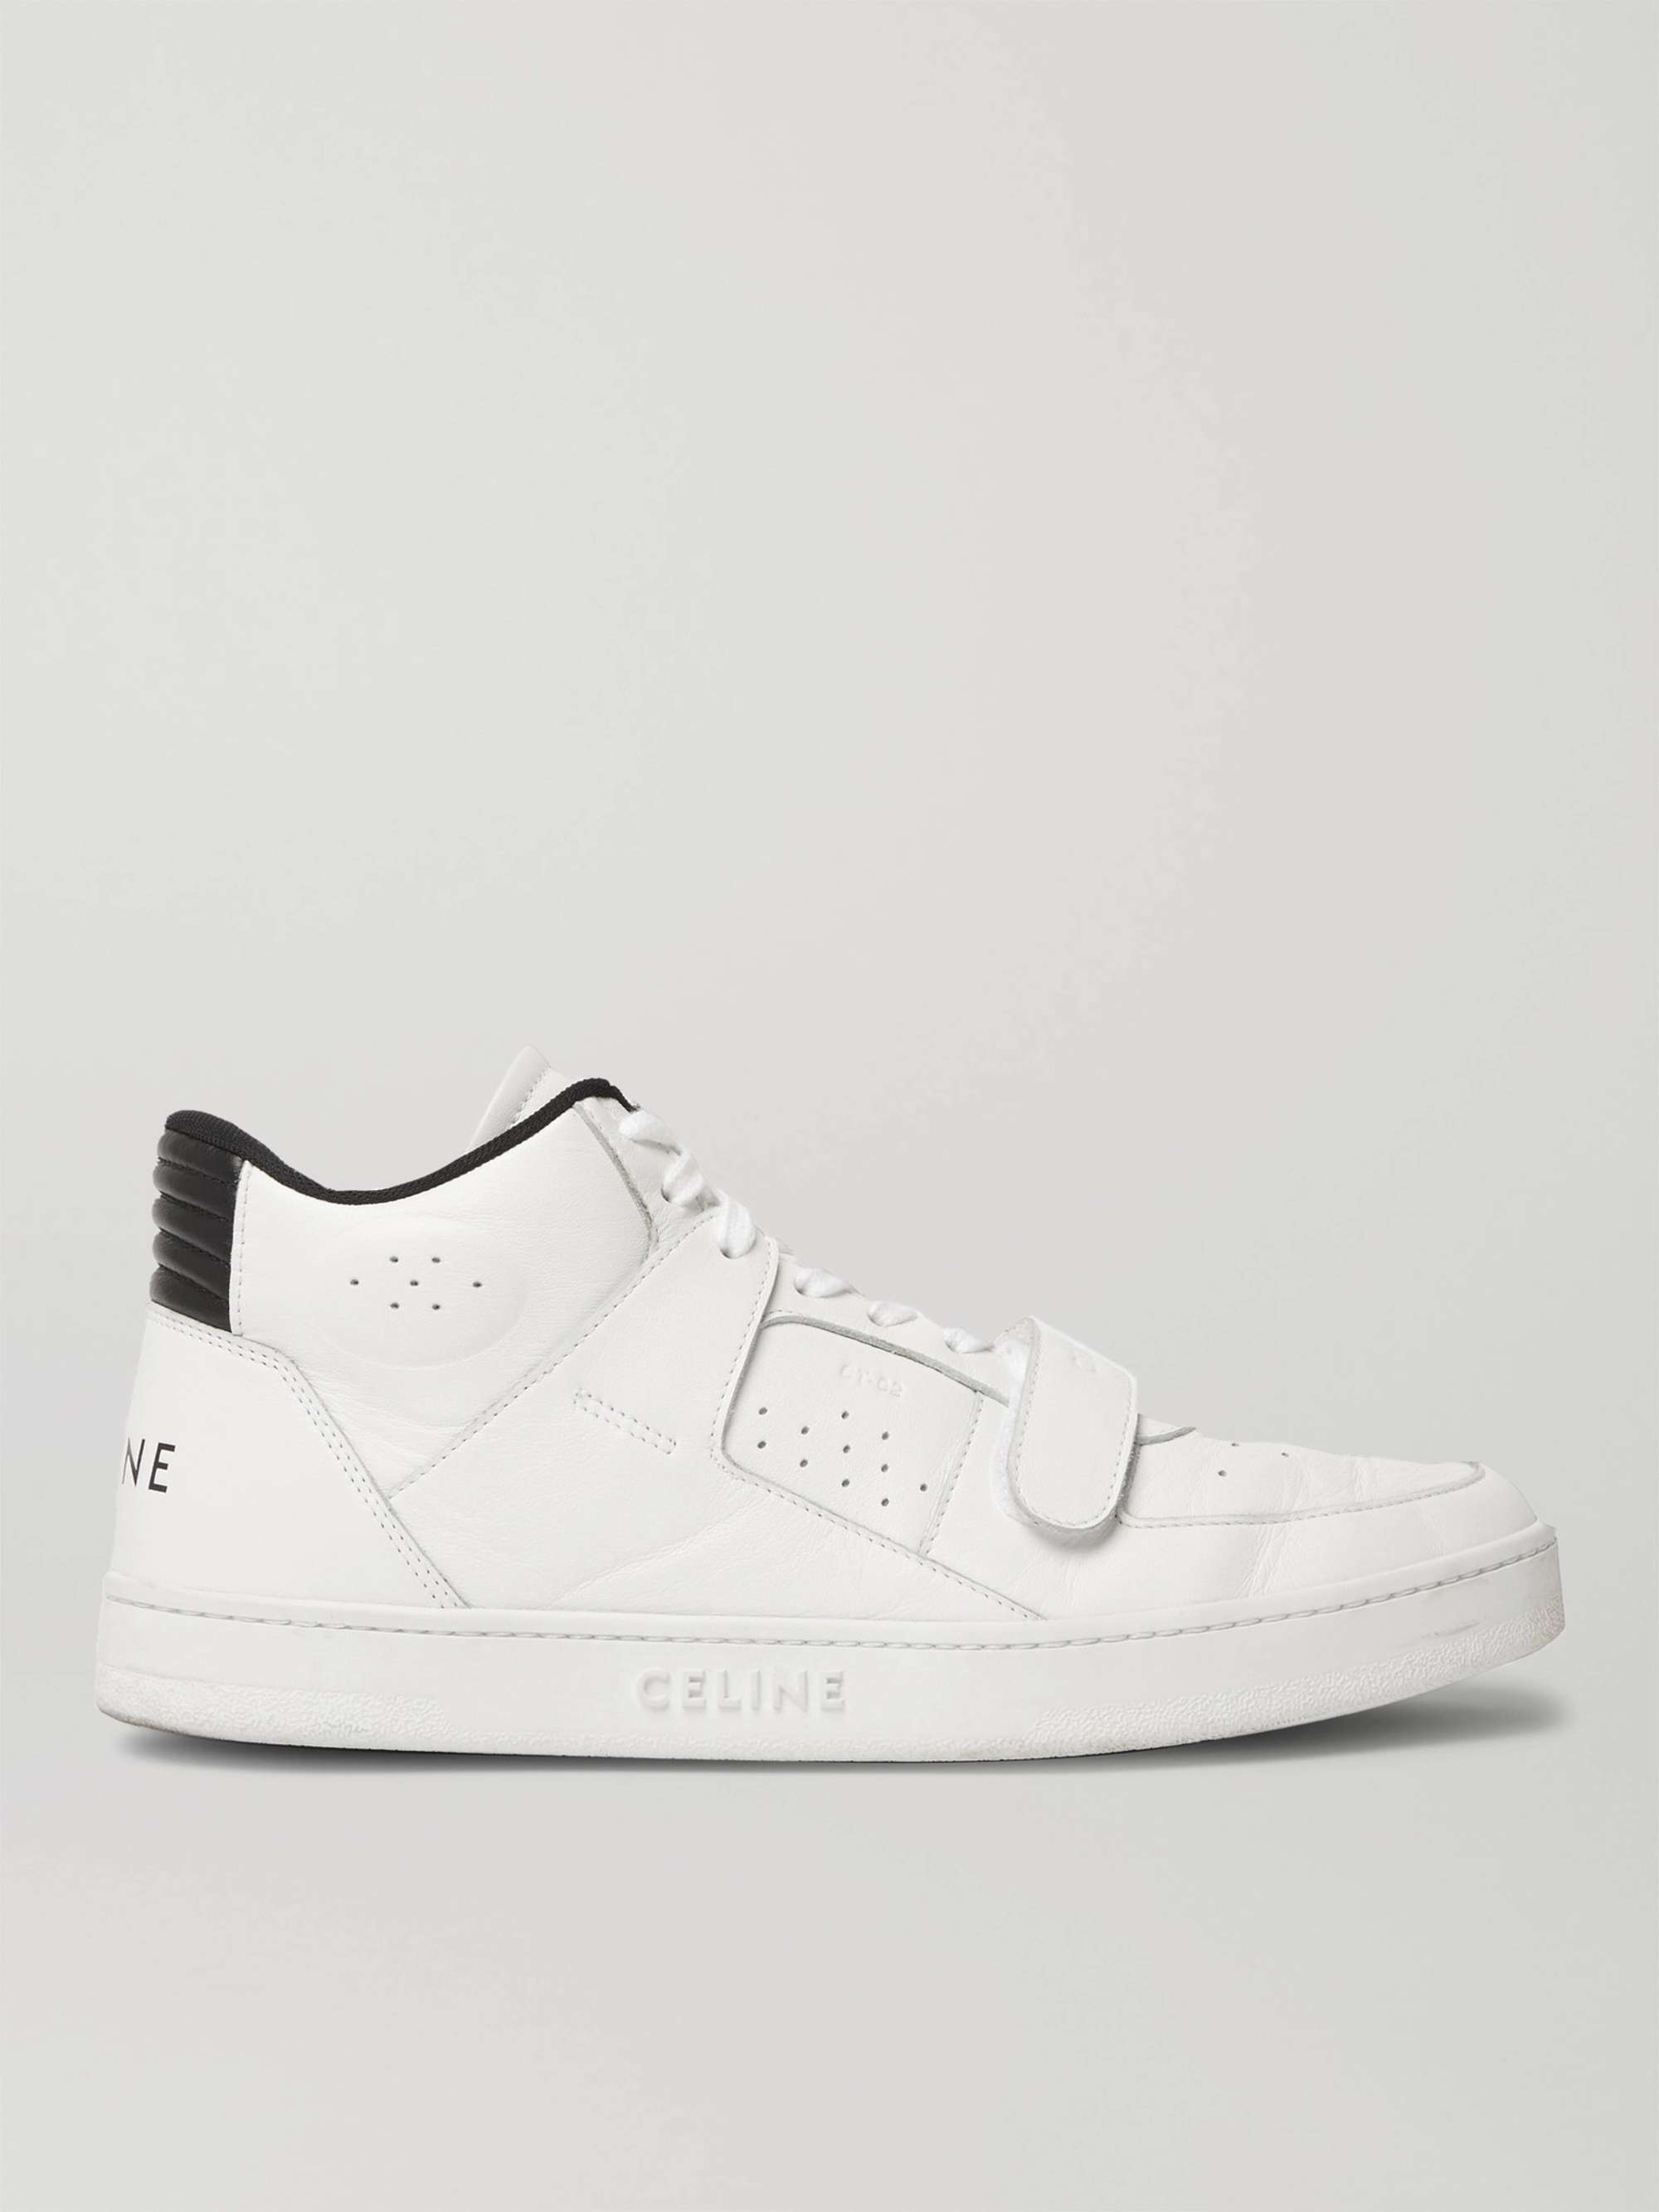 셀린느 옴므 제트 CT-02 하이탑 스니커즈 CELINE HOMME CT-02 Leather High-Top Sneakers,White